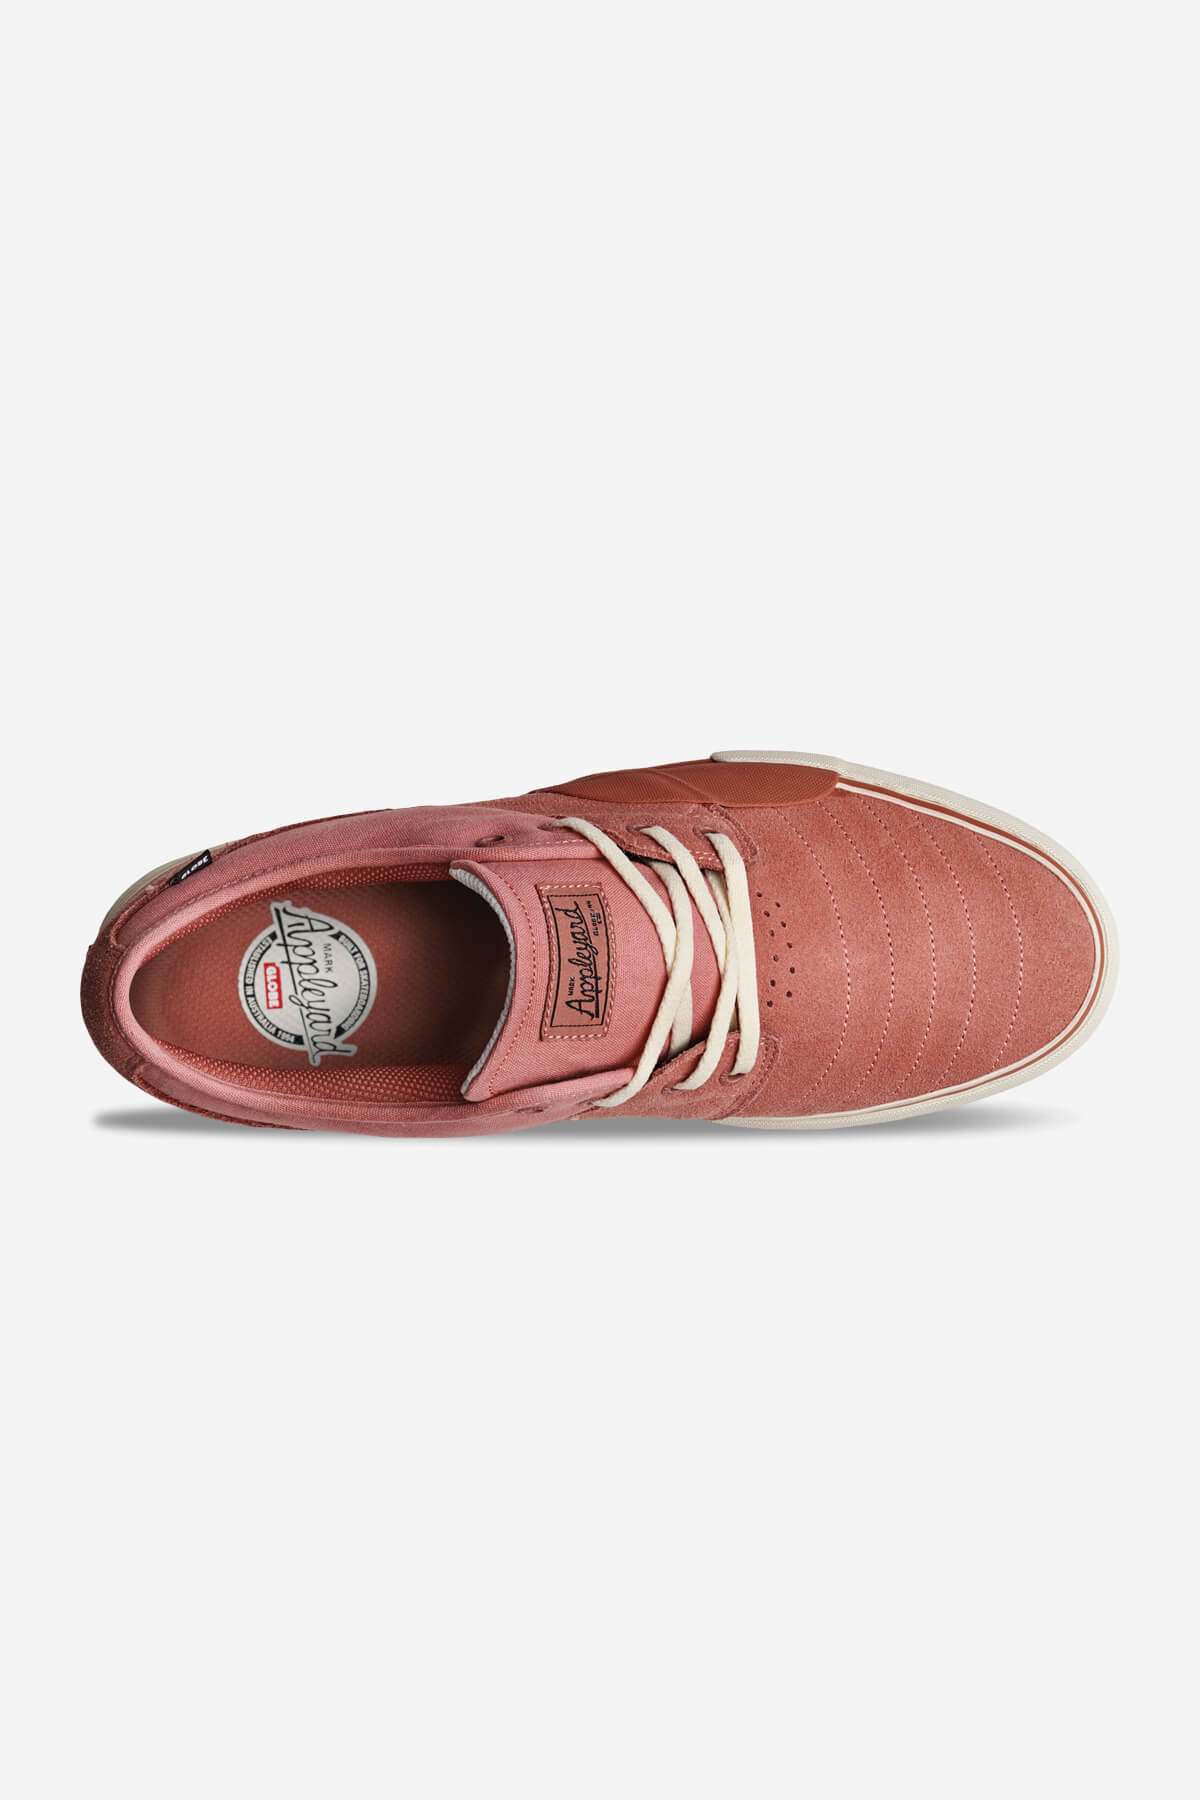 geroosterd brood Volgen blozen Mahalo Plus Italiaans Clay/Antiek skateboard schoenen - Globe Europa